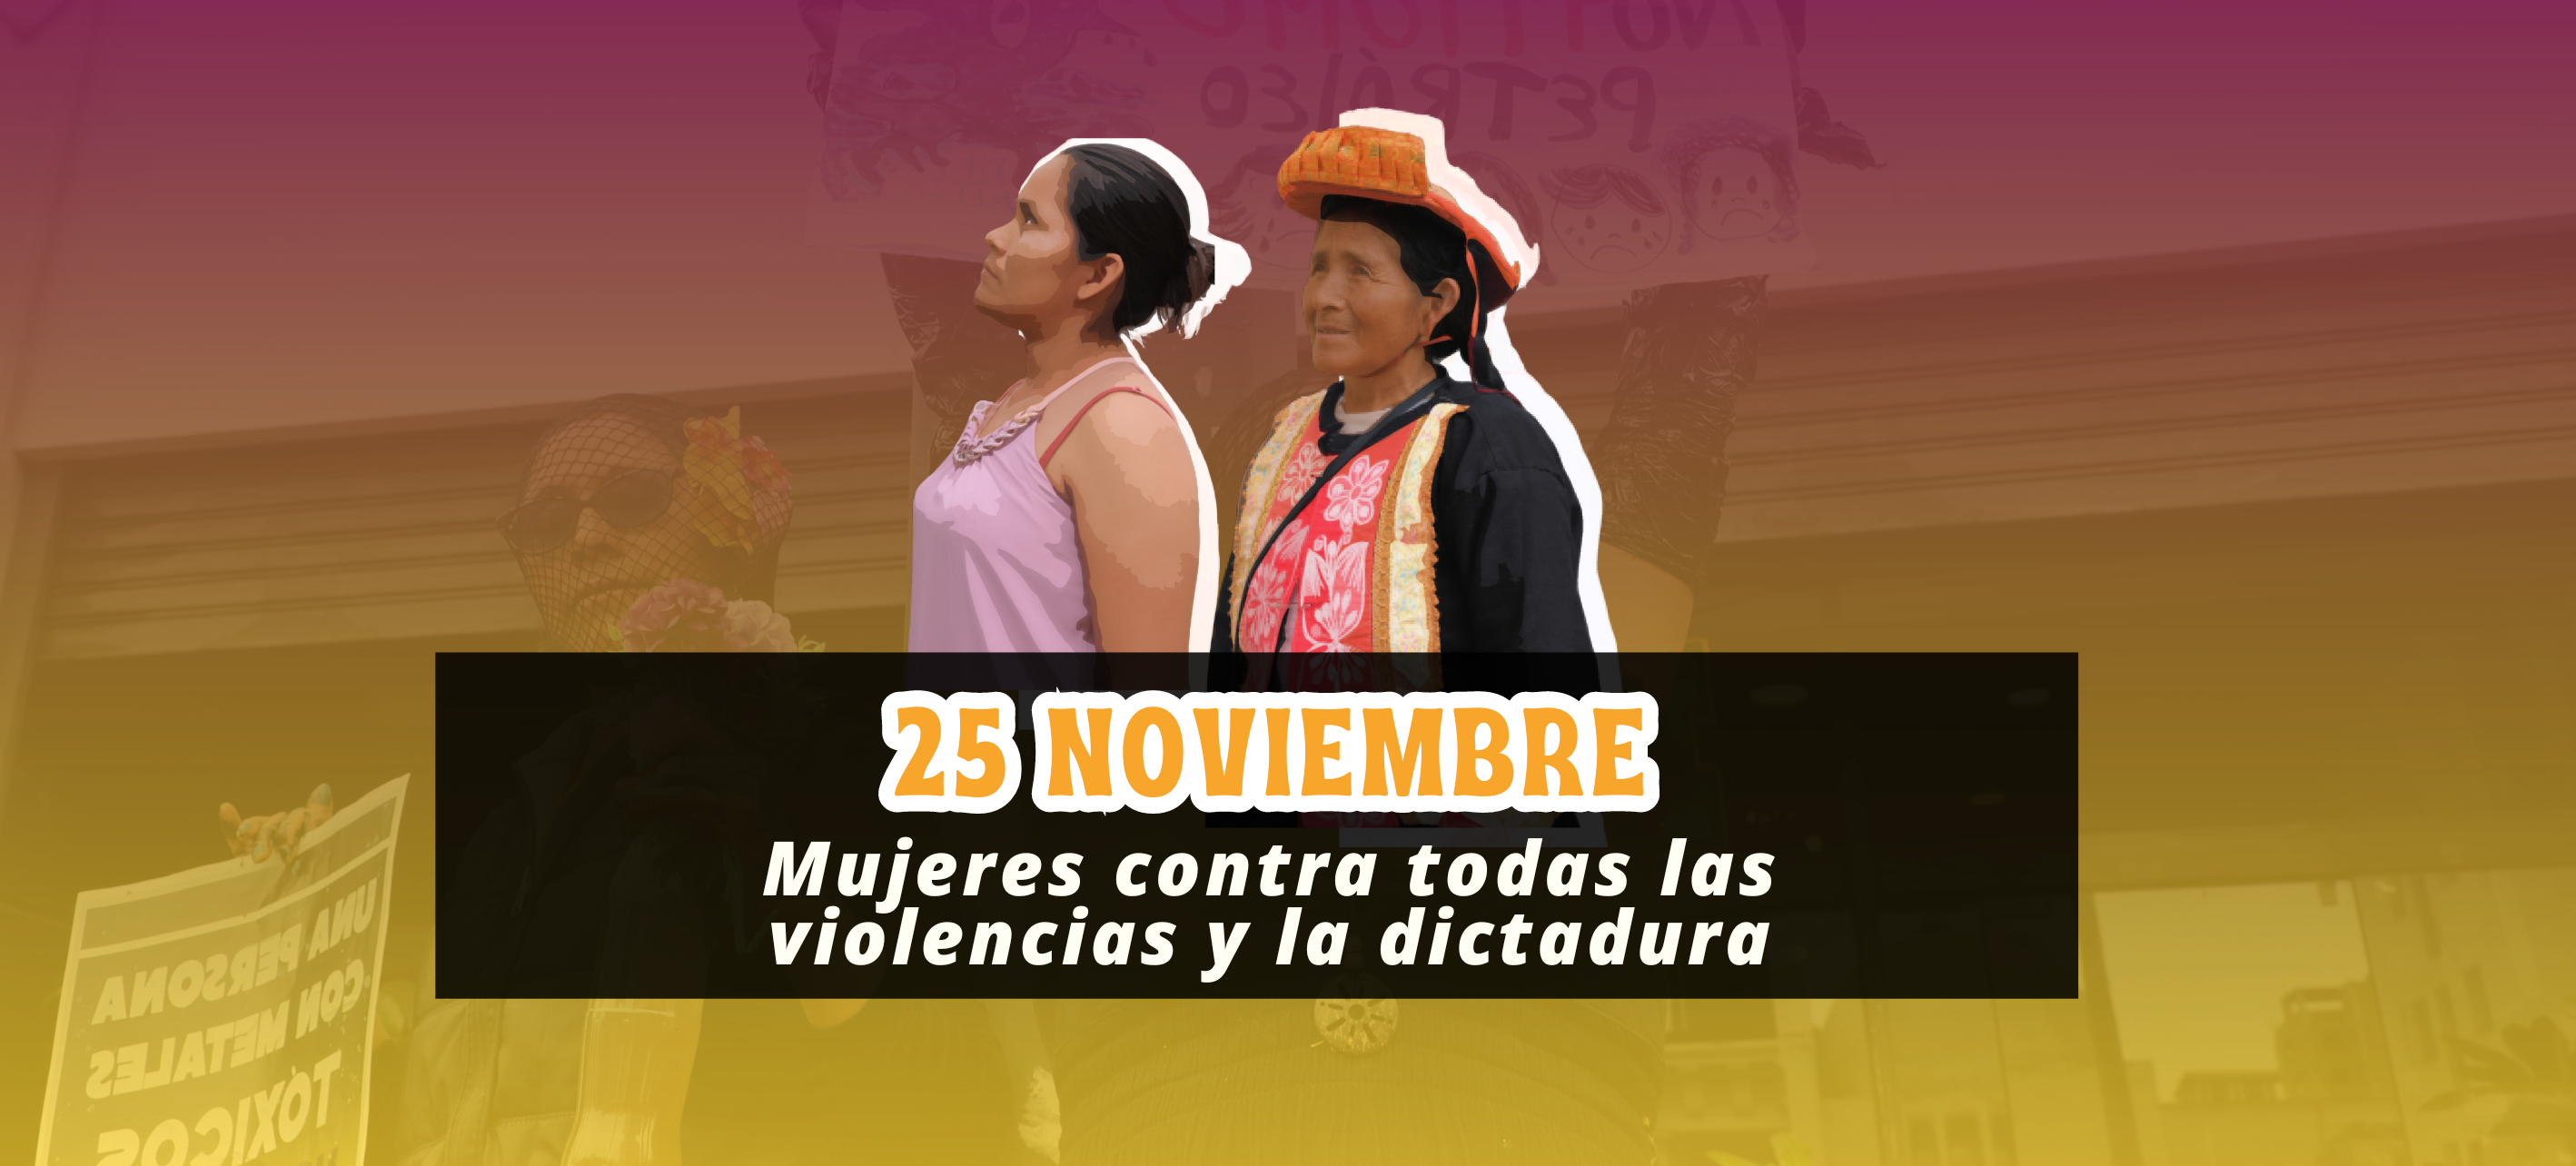 25N: Mujeres contra todas las violencias y la dictadura